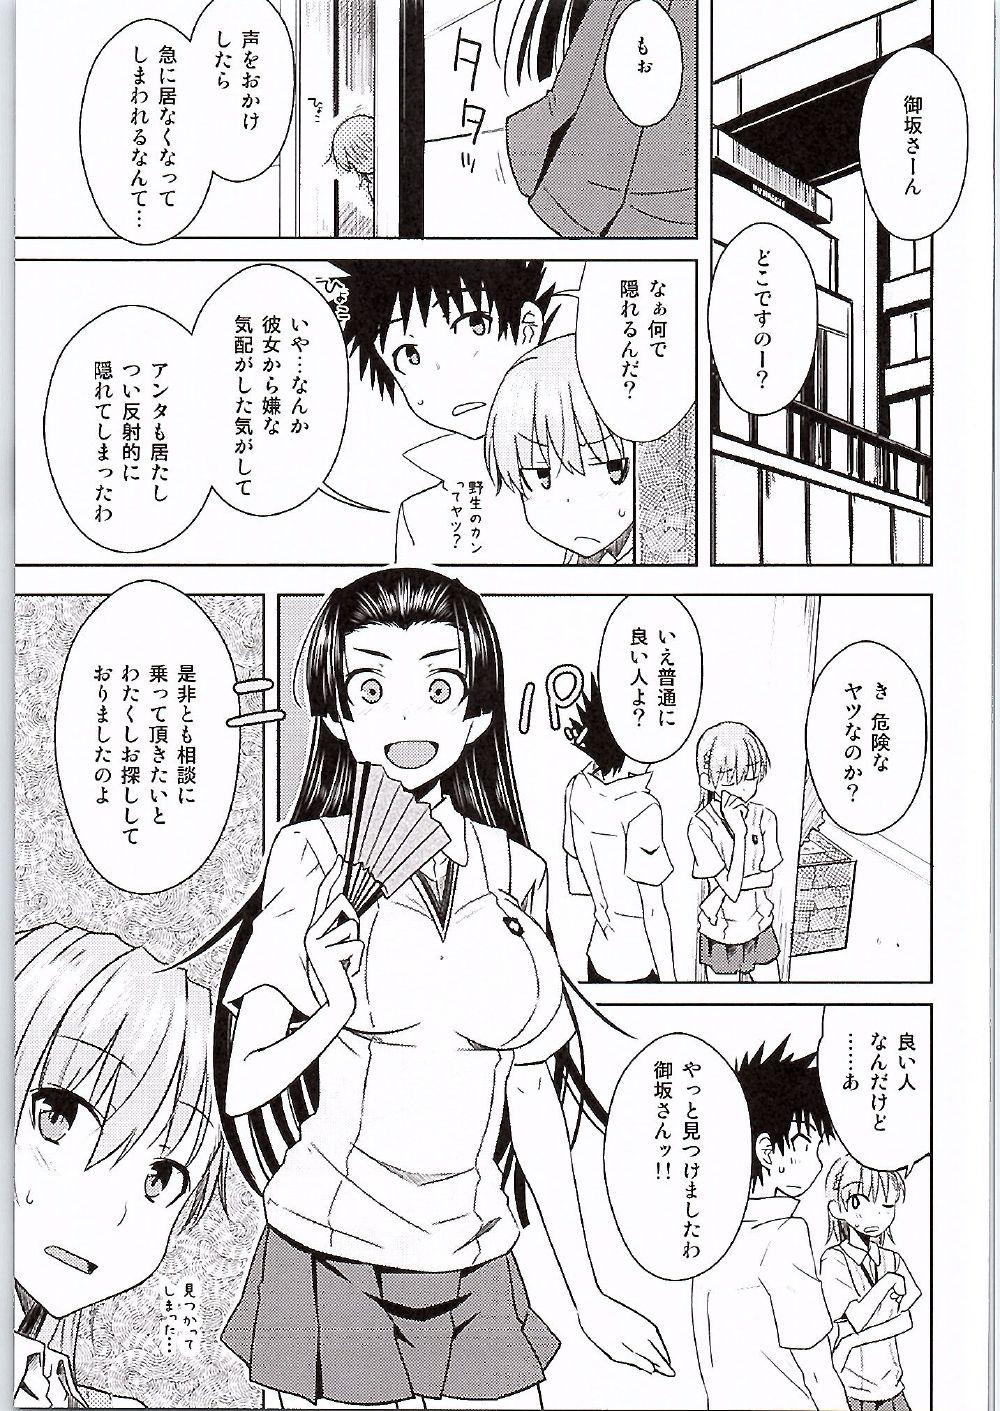 Sexteen BEAUTIFUL SHINE - Toaru kagaku no railgun Sucking Cock - Page 4